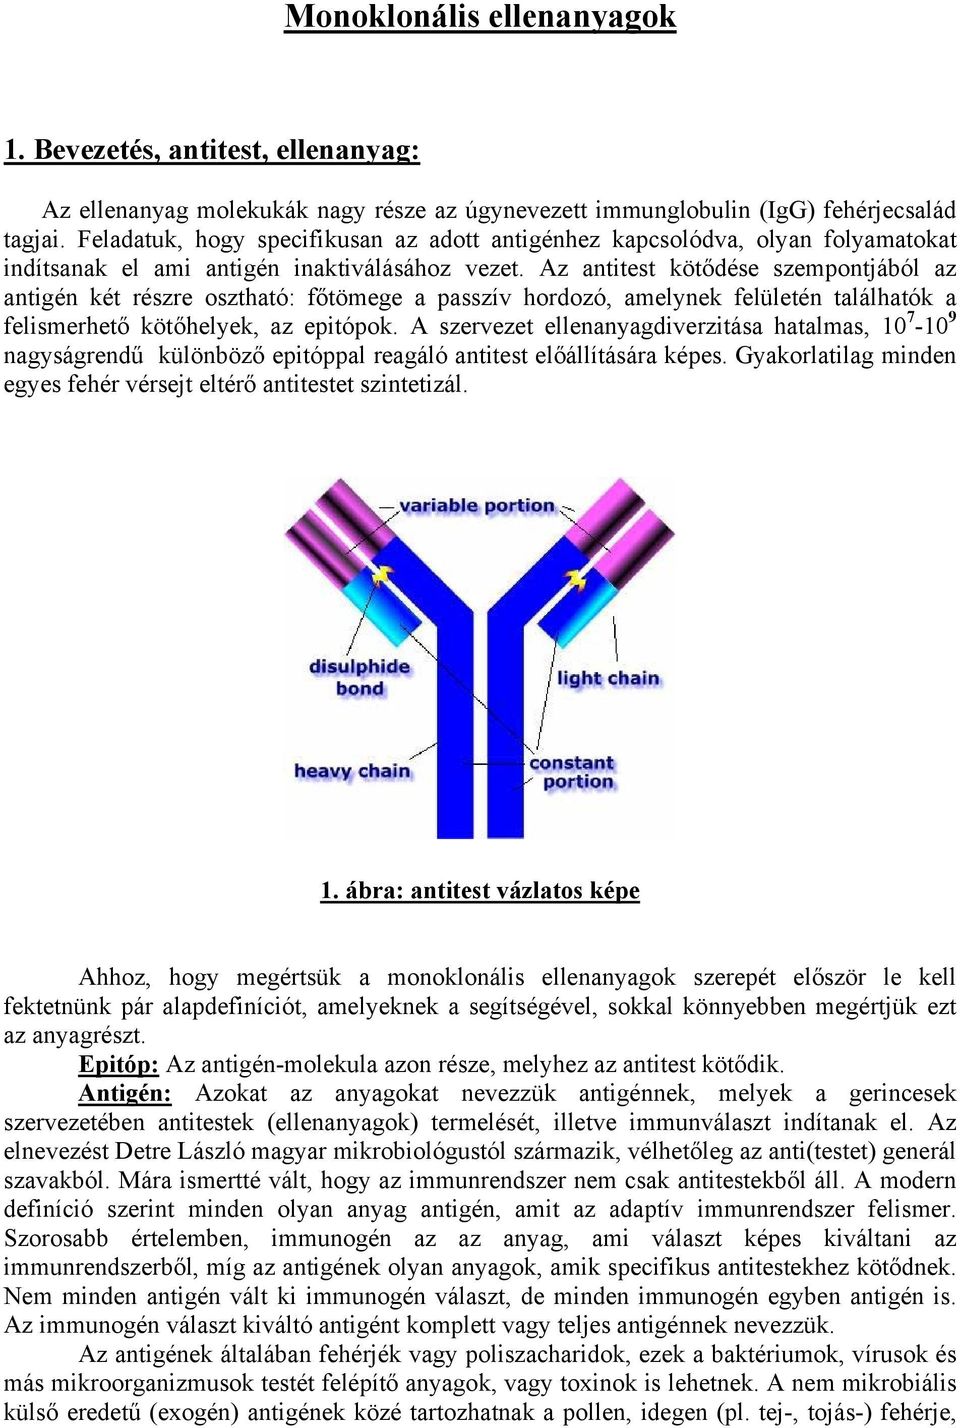 Immunrendszer II - B lymphocyták - SotePedia